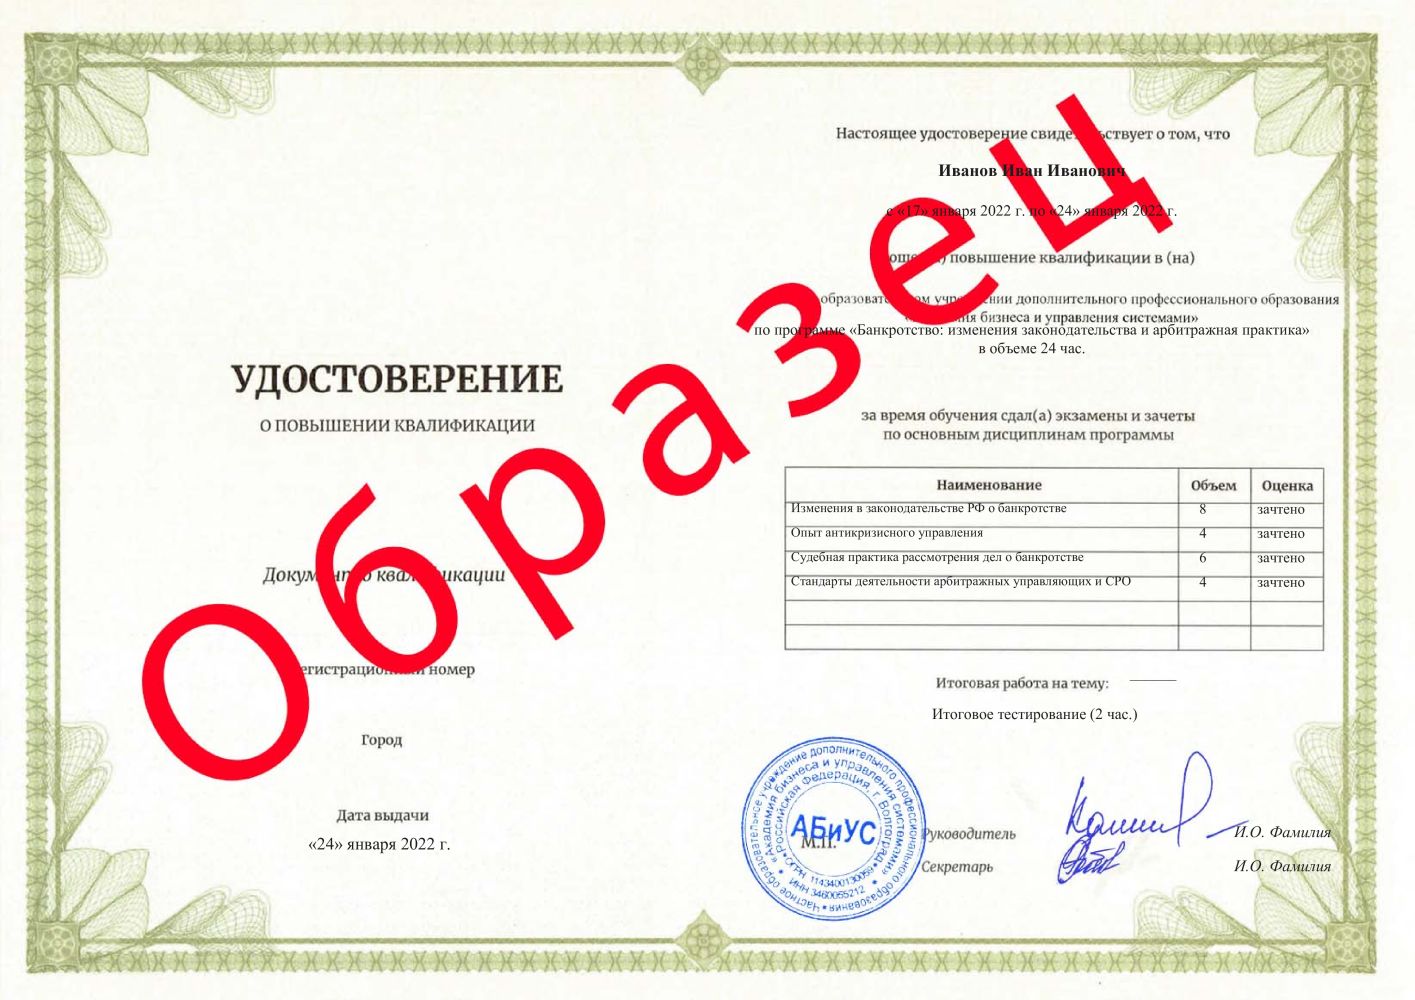 Удостоверение Банкротство: изменения законодательства и арбитражная практика 24 часа 6813 руб.